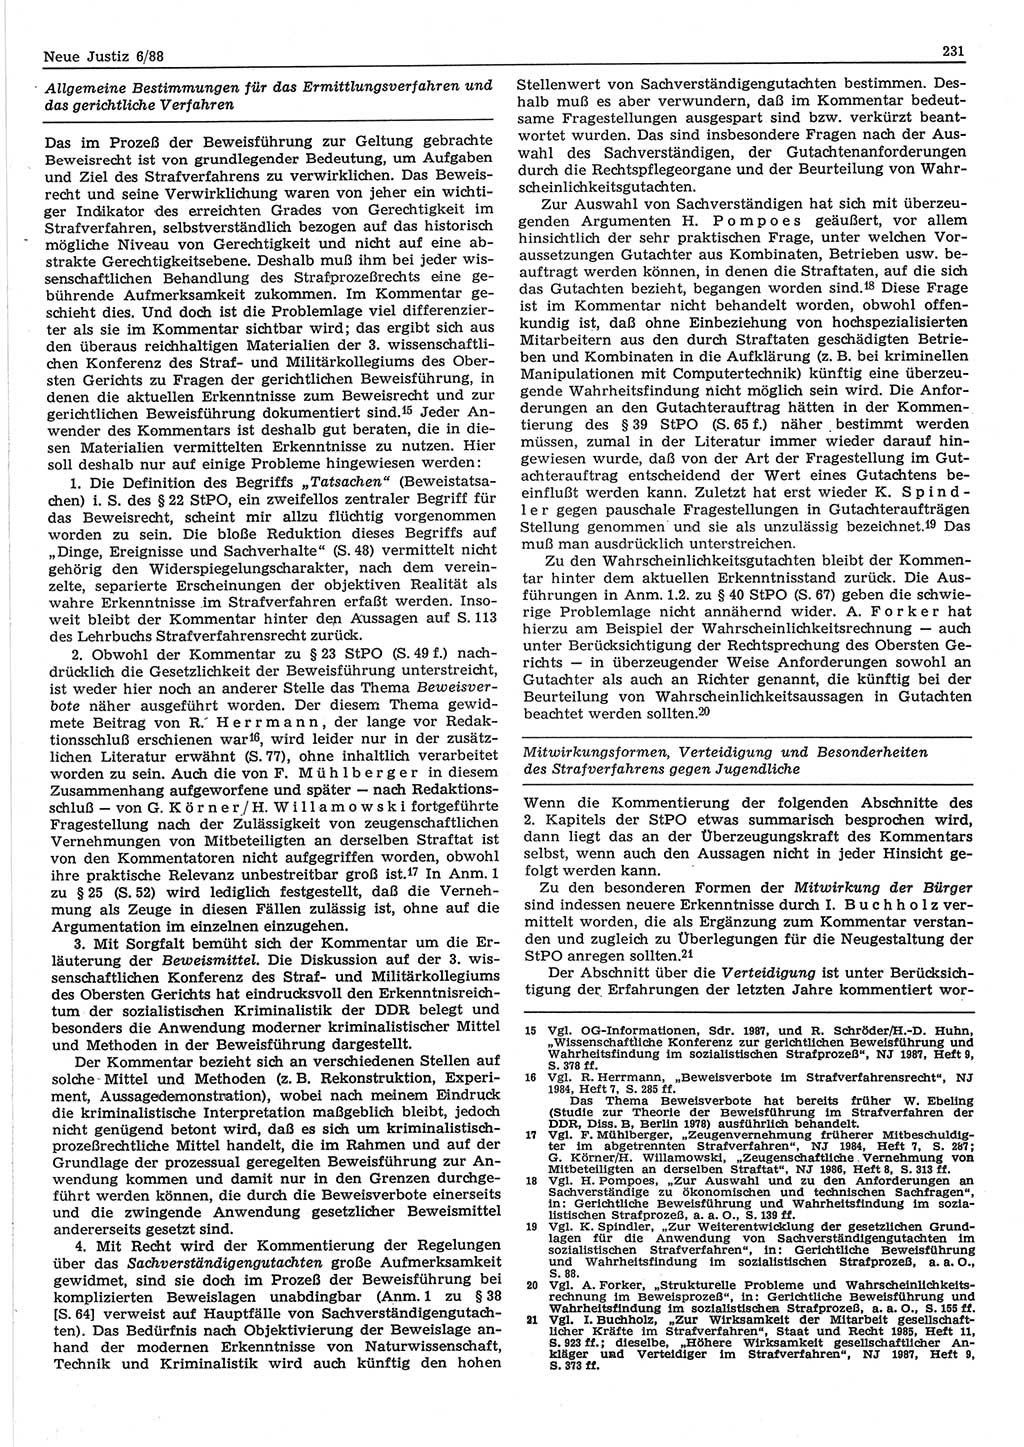 Neue Justiz (NJ), Zeitschrift für sozialistisches Recht und Gesetzlichkeit [Deutsche Demokratische Republik (DDR)], 42. Jahrgang 1988, Seite 231 (NJ DDR 1988, S. 231)